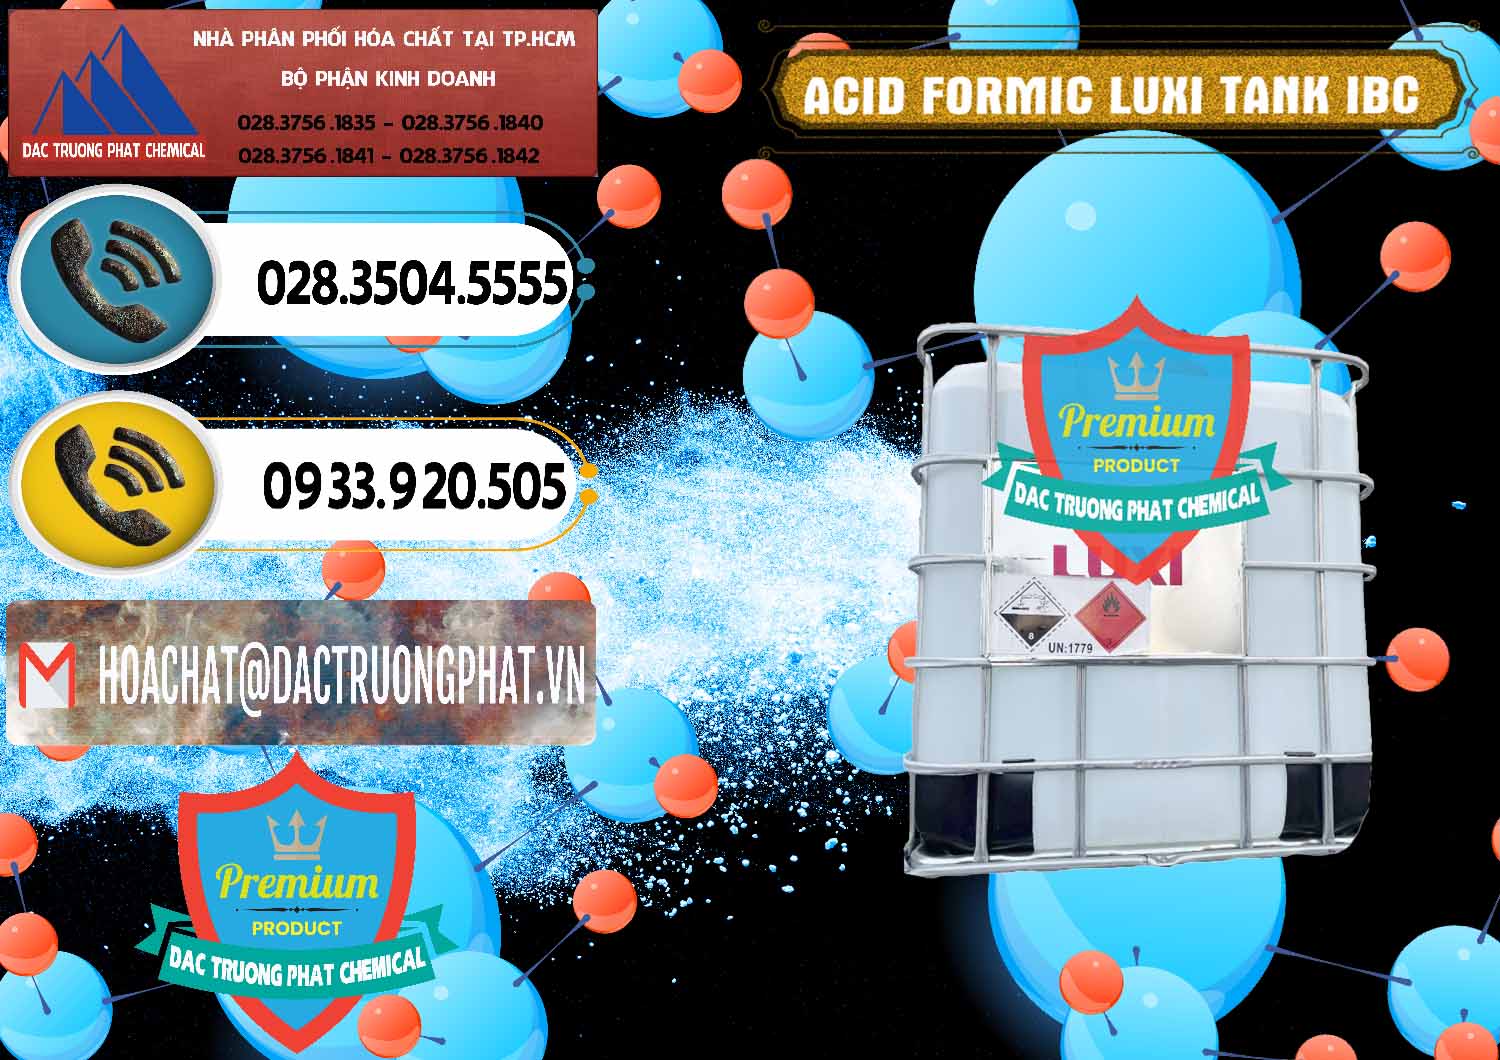 Bán _ cung cấp Acid Formic - Acid Formic Tank - Bồn IBC Luxi Trung Quốc China - 0400 - Chuyên cung cấp và bán hóa chất tại TP.HCM - hoachatdetnhuom.vn